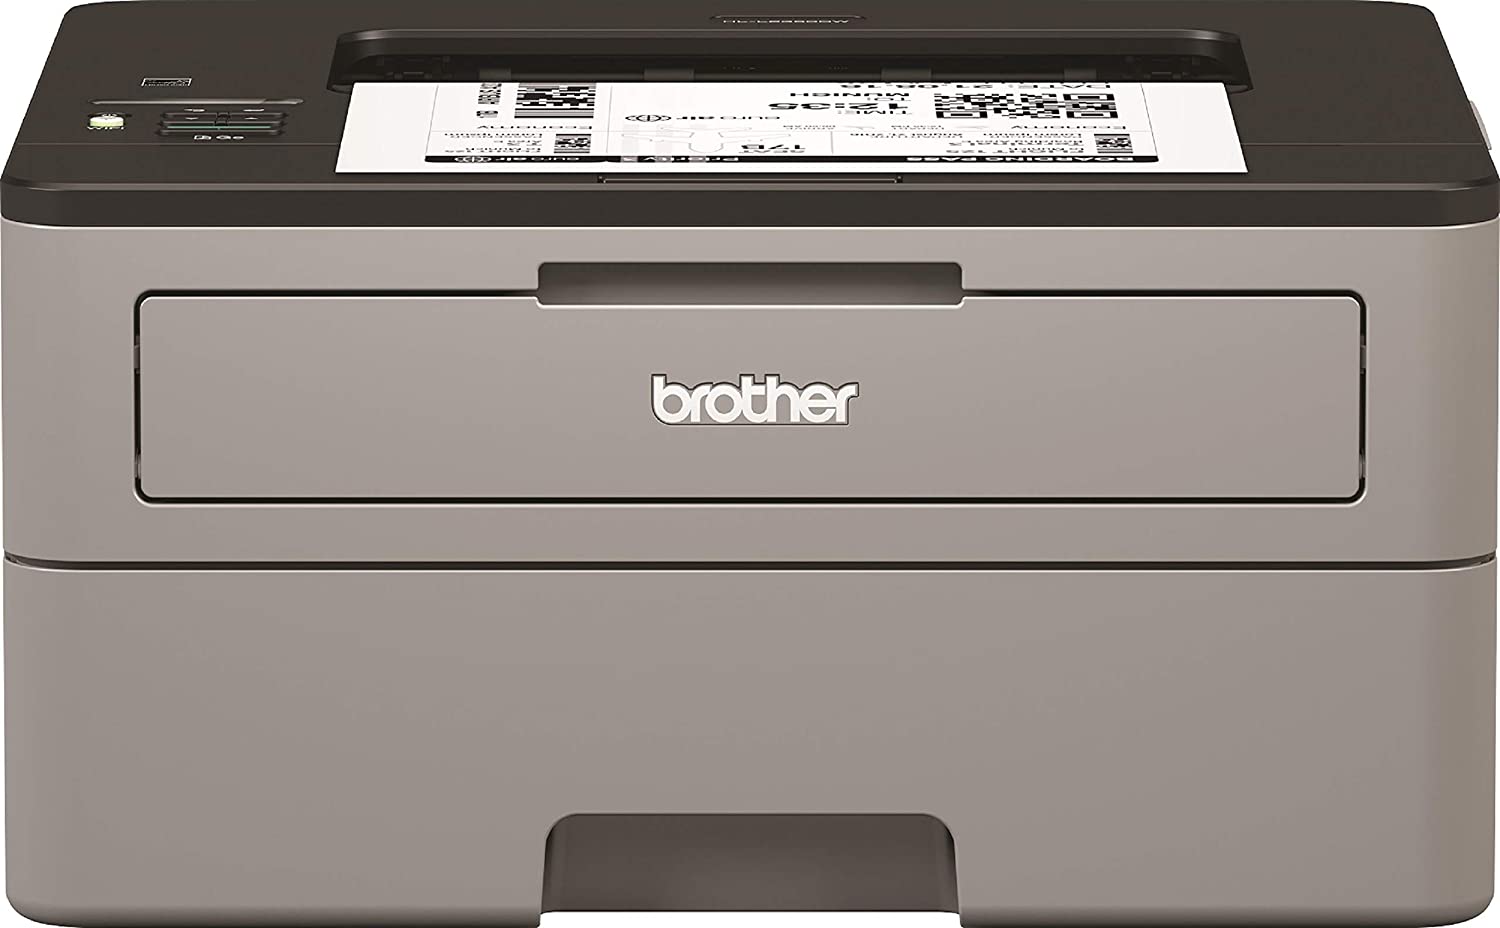 Impresora laser color barata, Wifi y multifunción: HP, Brother